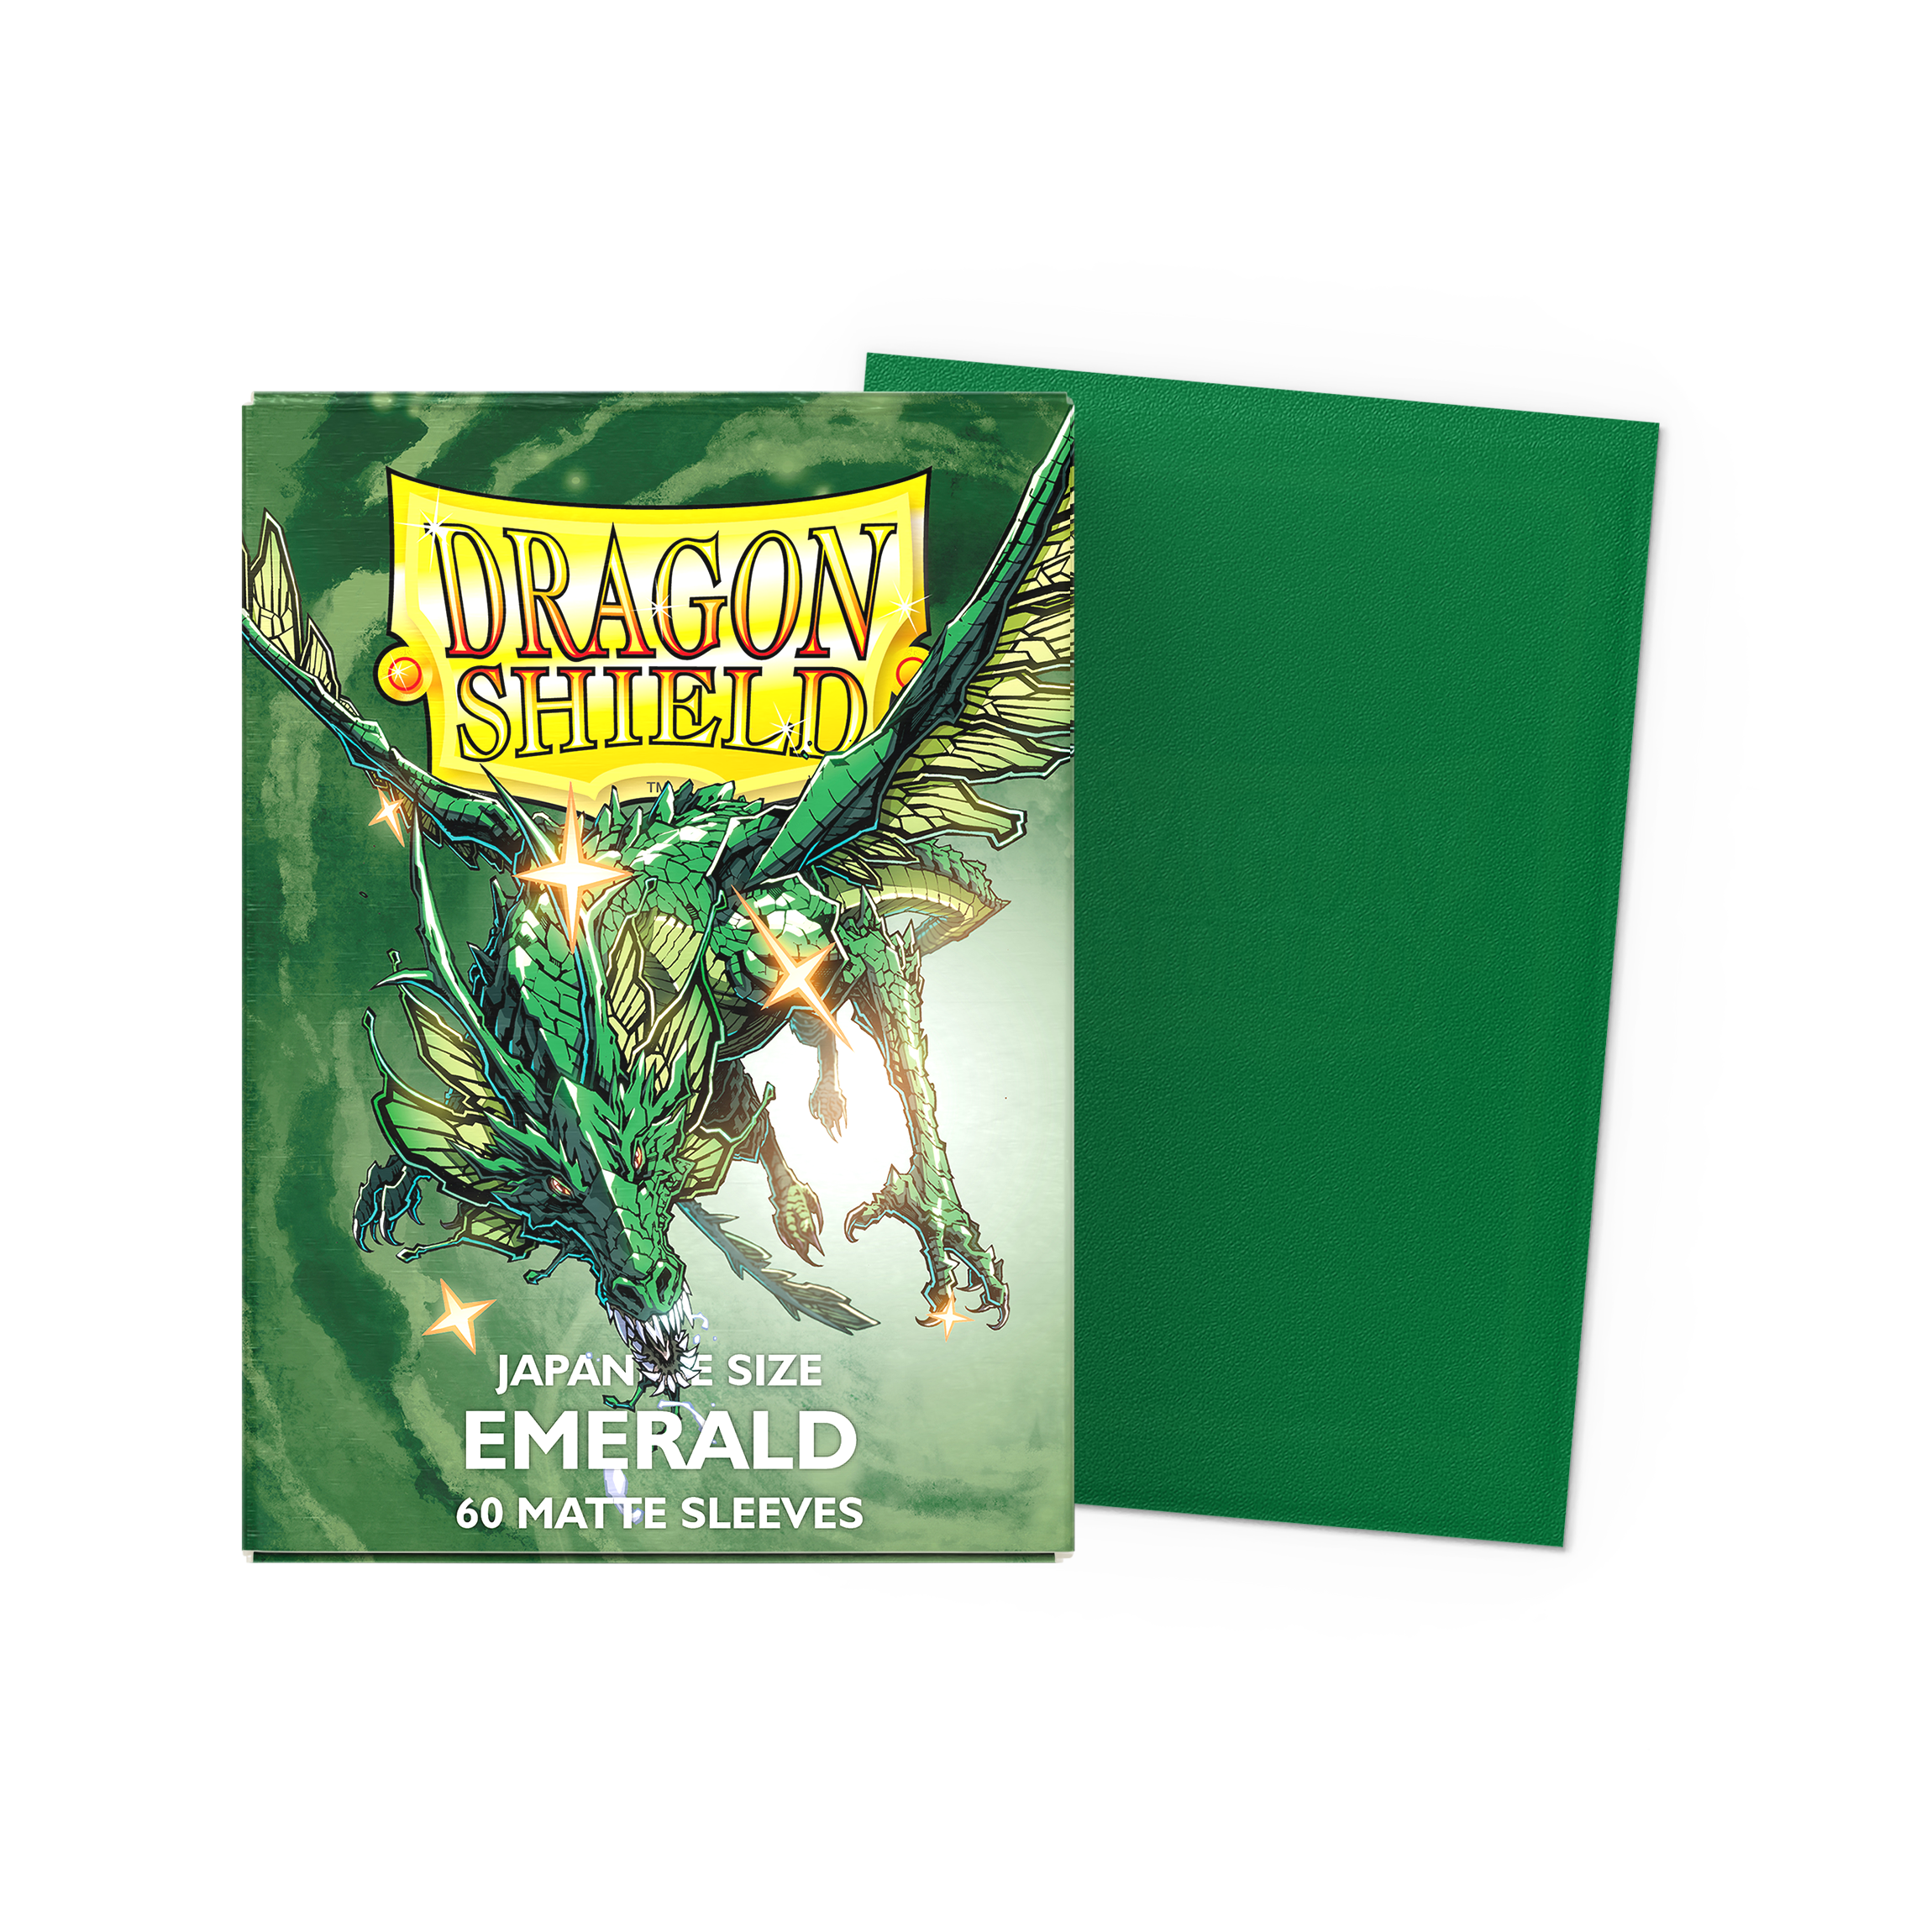 Dragon Shield - Matte - Green